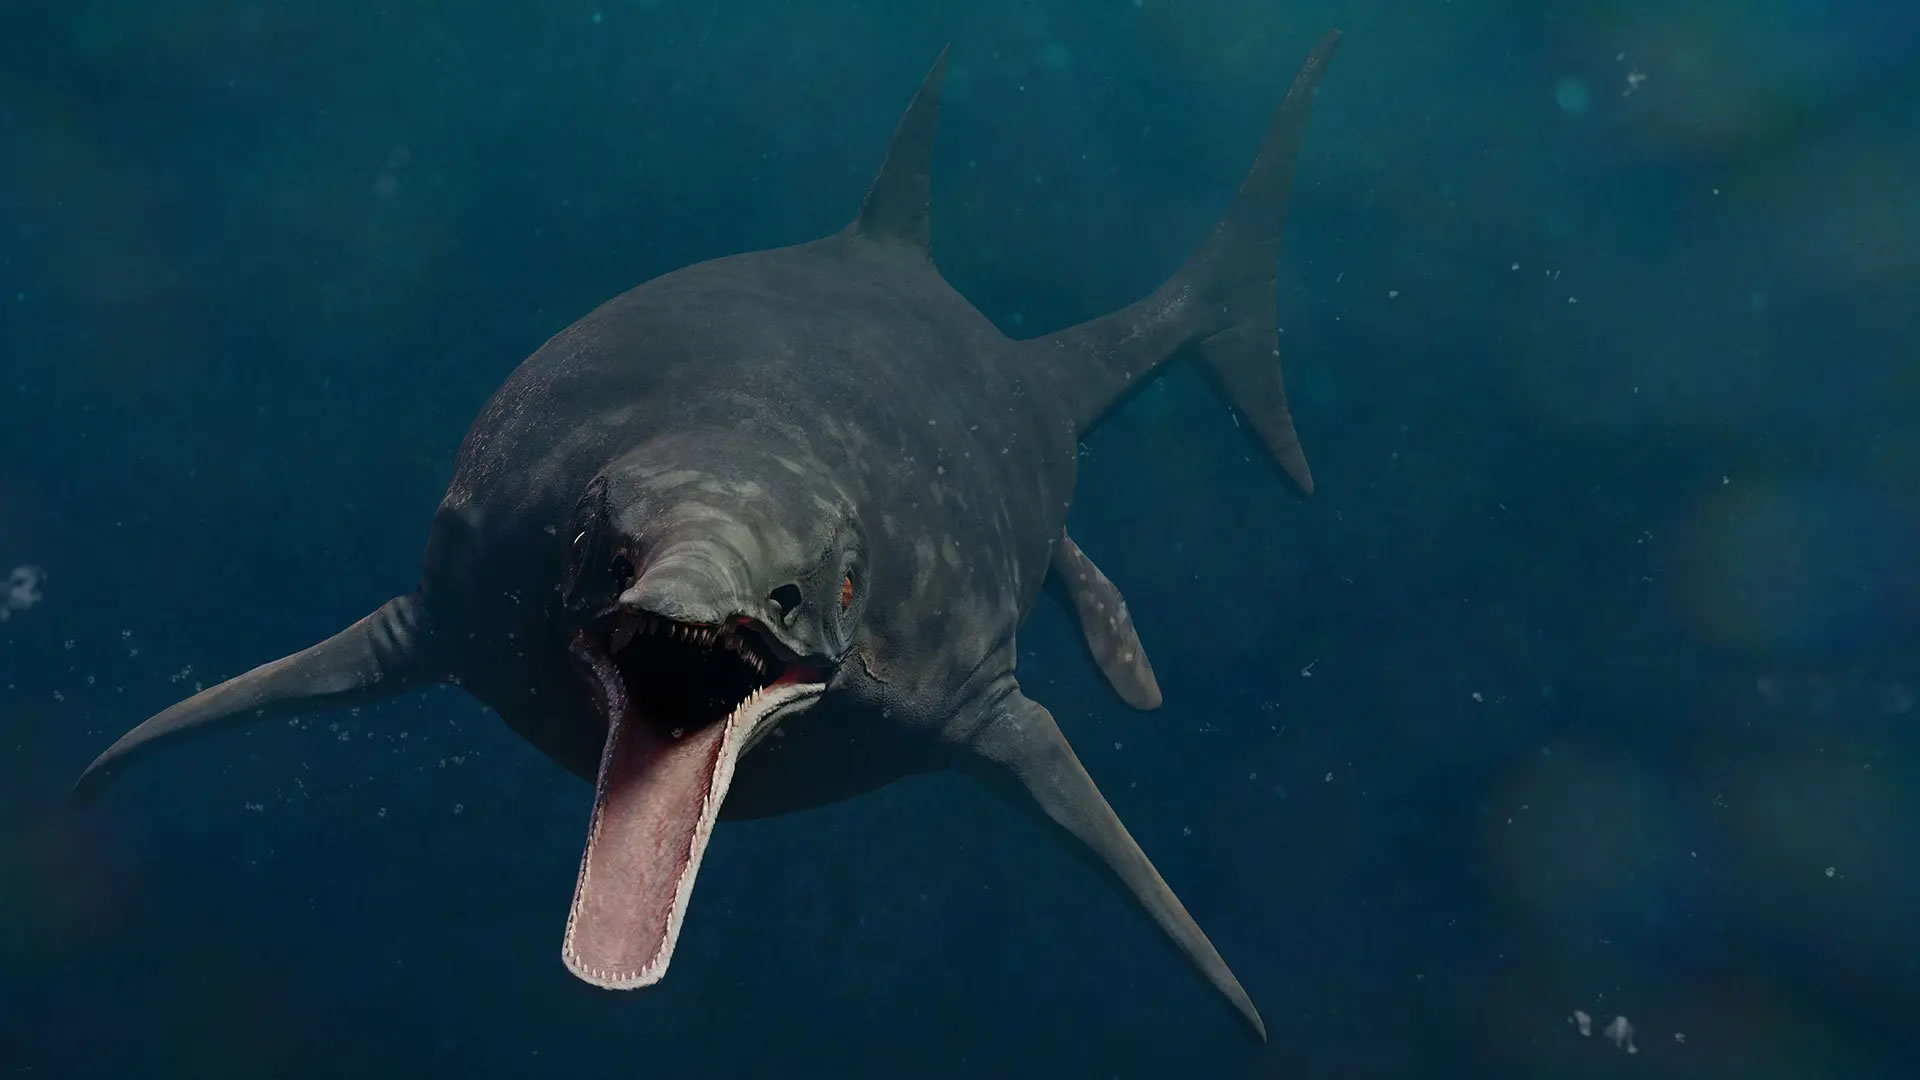 加拿大发现的化石揭示一种超级捕食者鱼龙 可能是地球史上最大动物